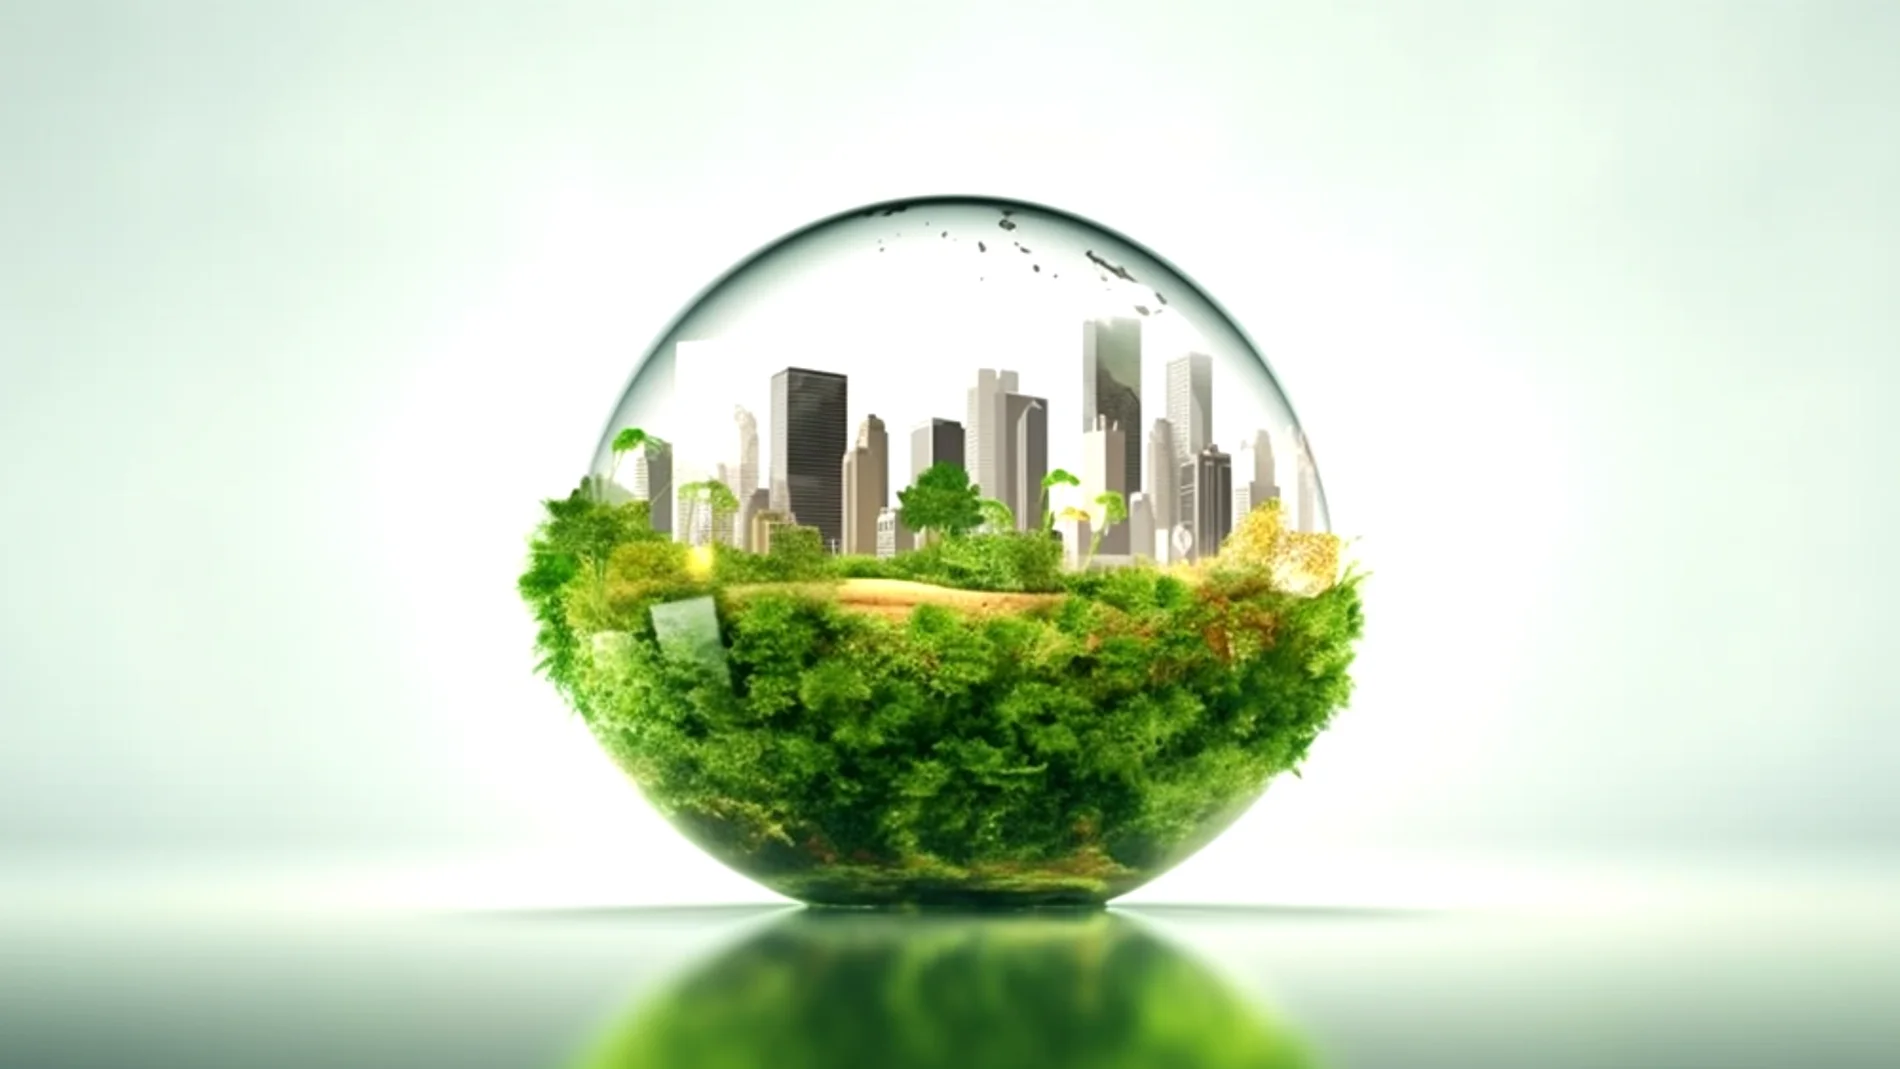 Tratamiento de residuos: La transformación sostenible encabezada por Ecoembes